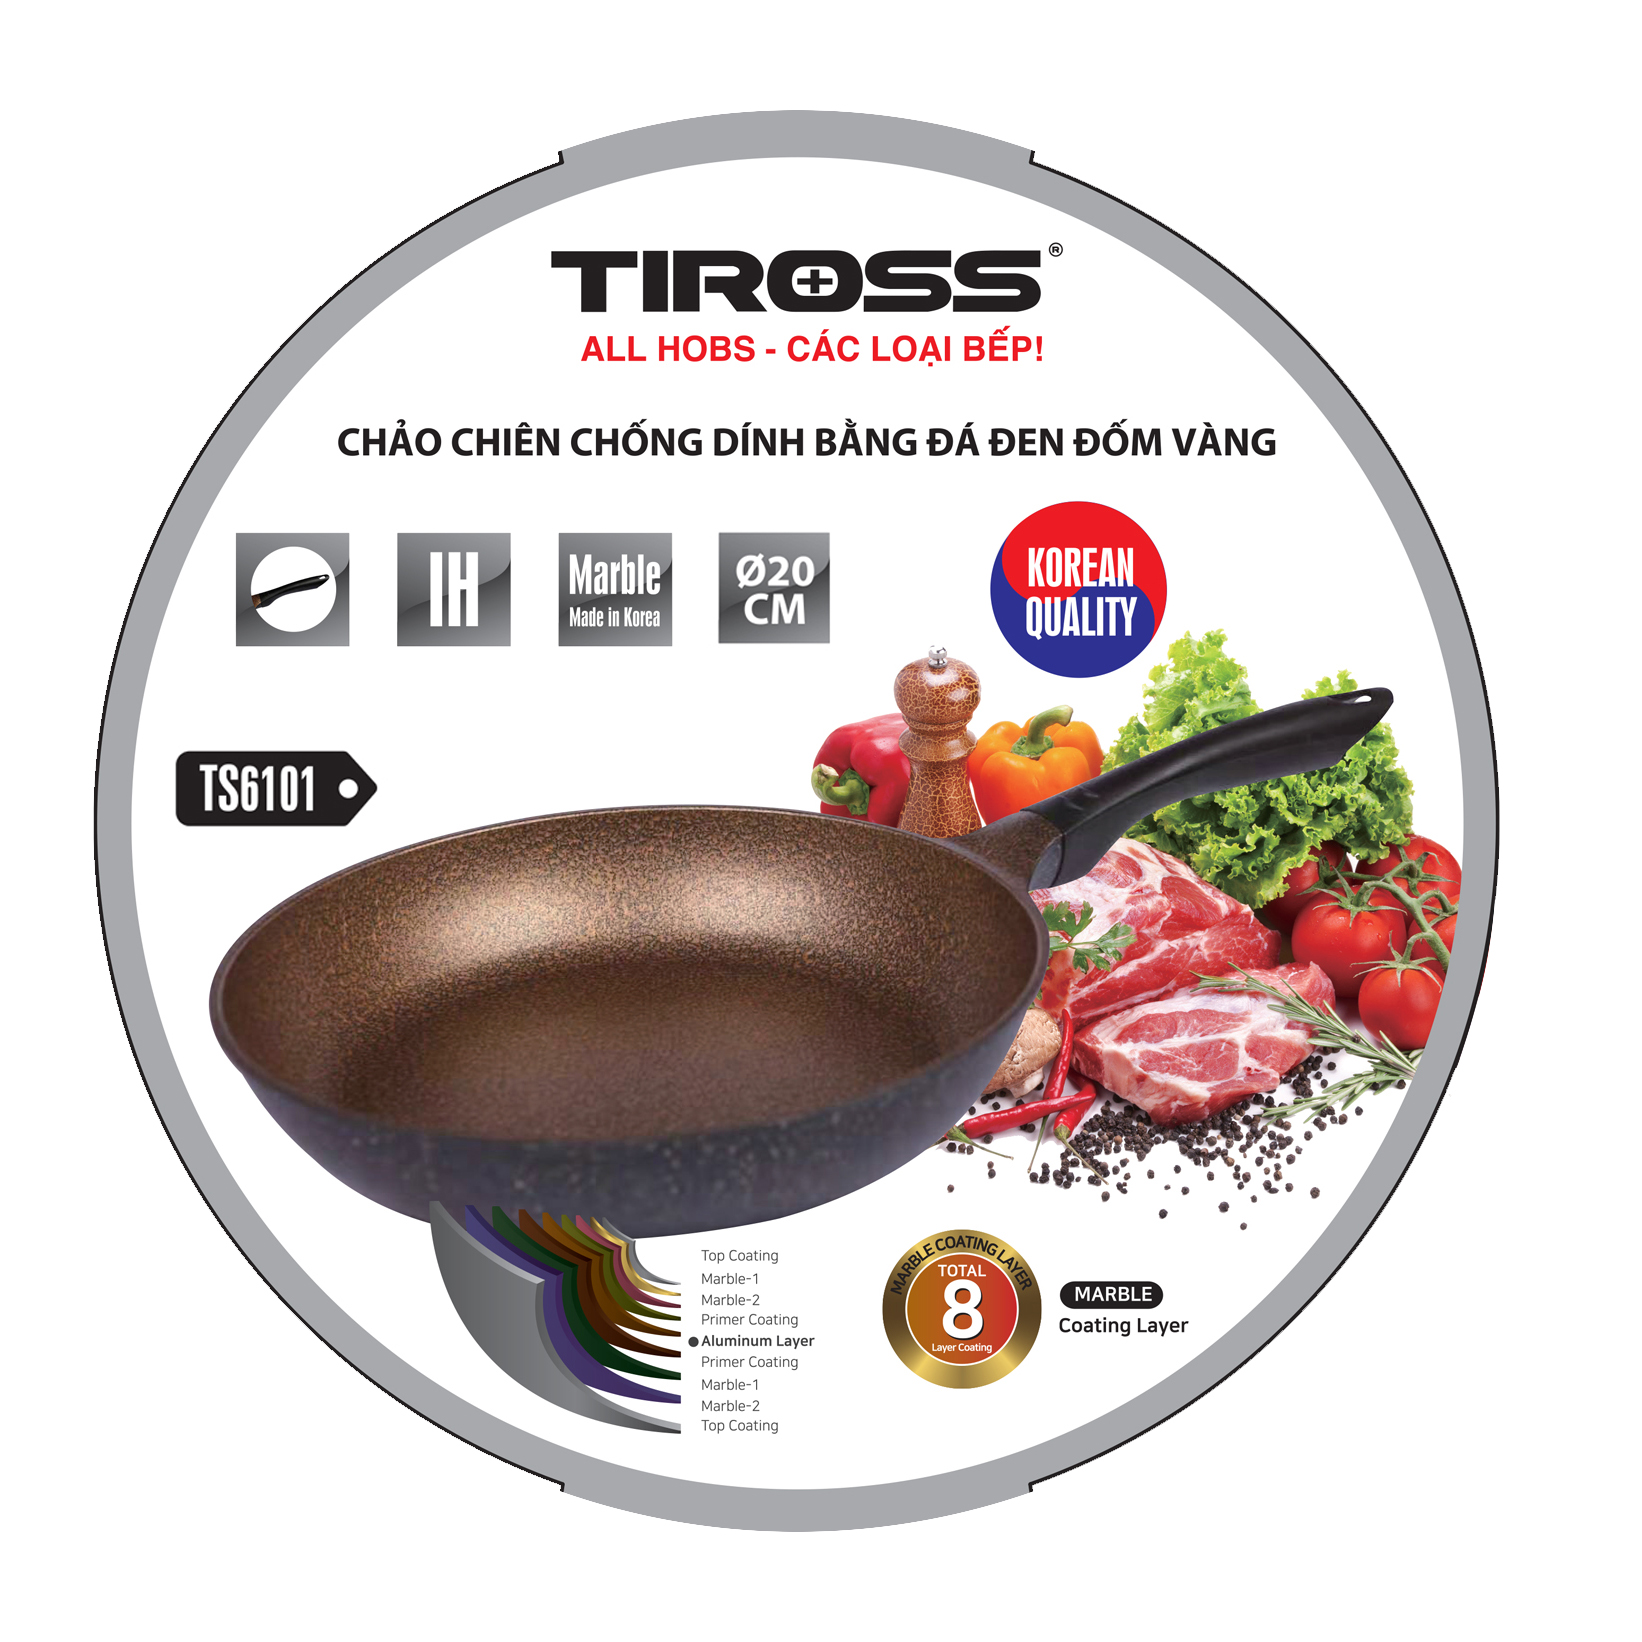 Chảo chống dính Tiross TS9601 có thể sử dụng cho mọi loại bếp